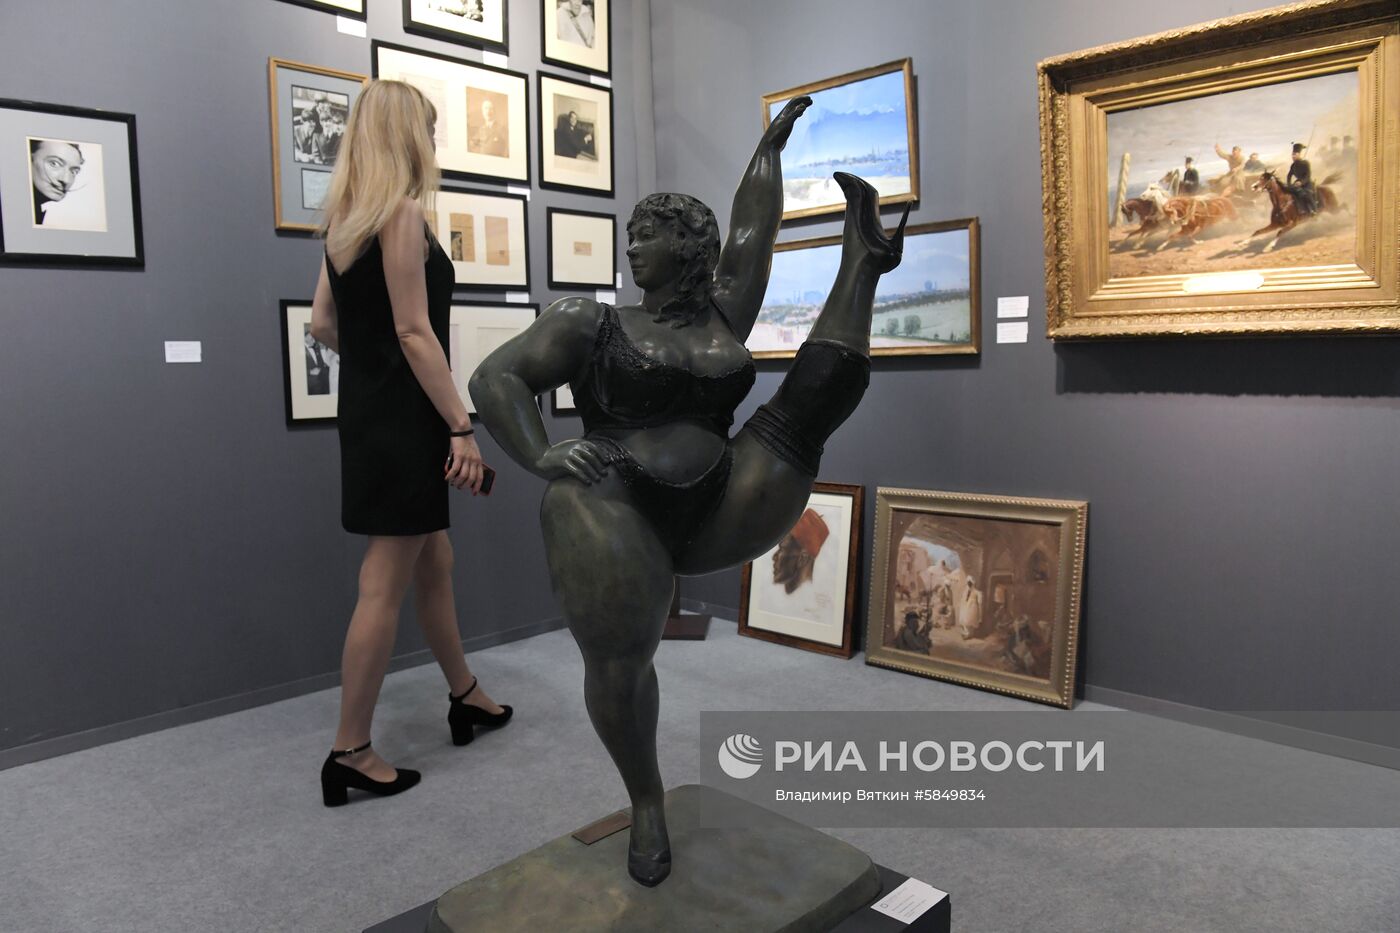 Международная ярмарка Russian Antique & Art Fair в ЦВЗ "Манеж"